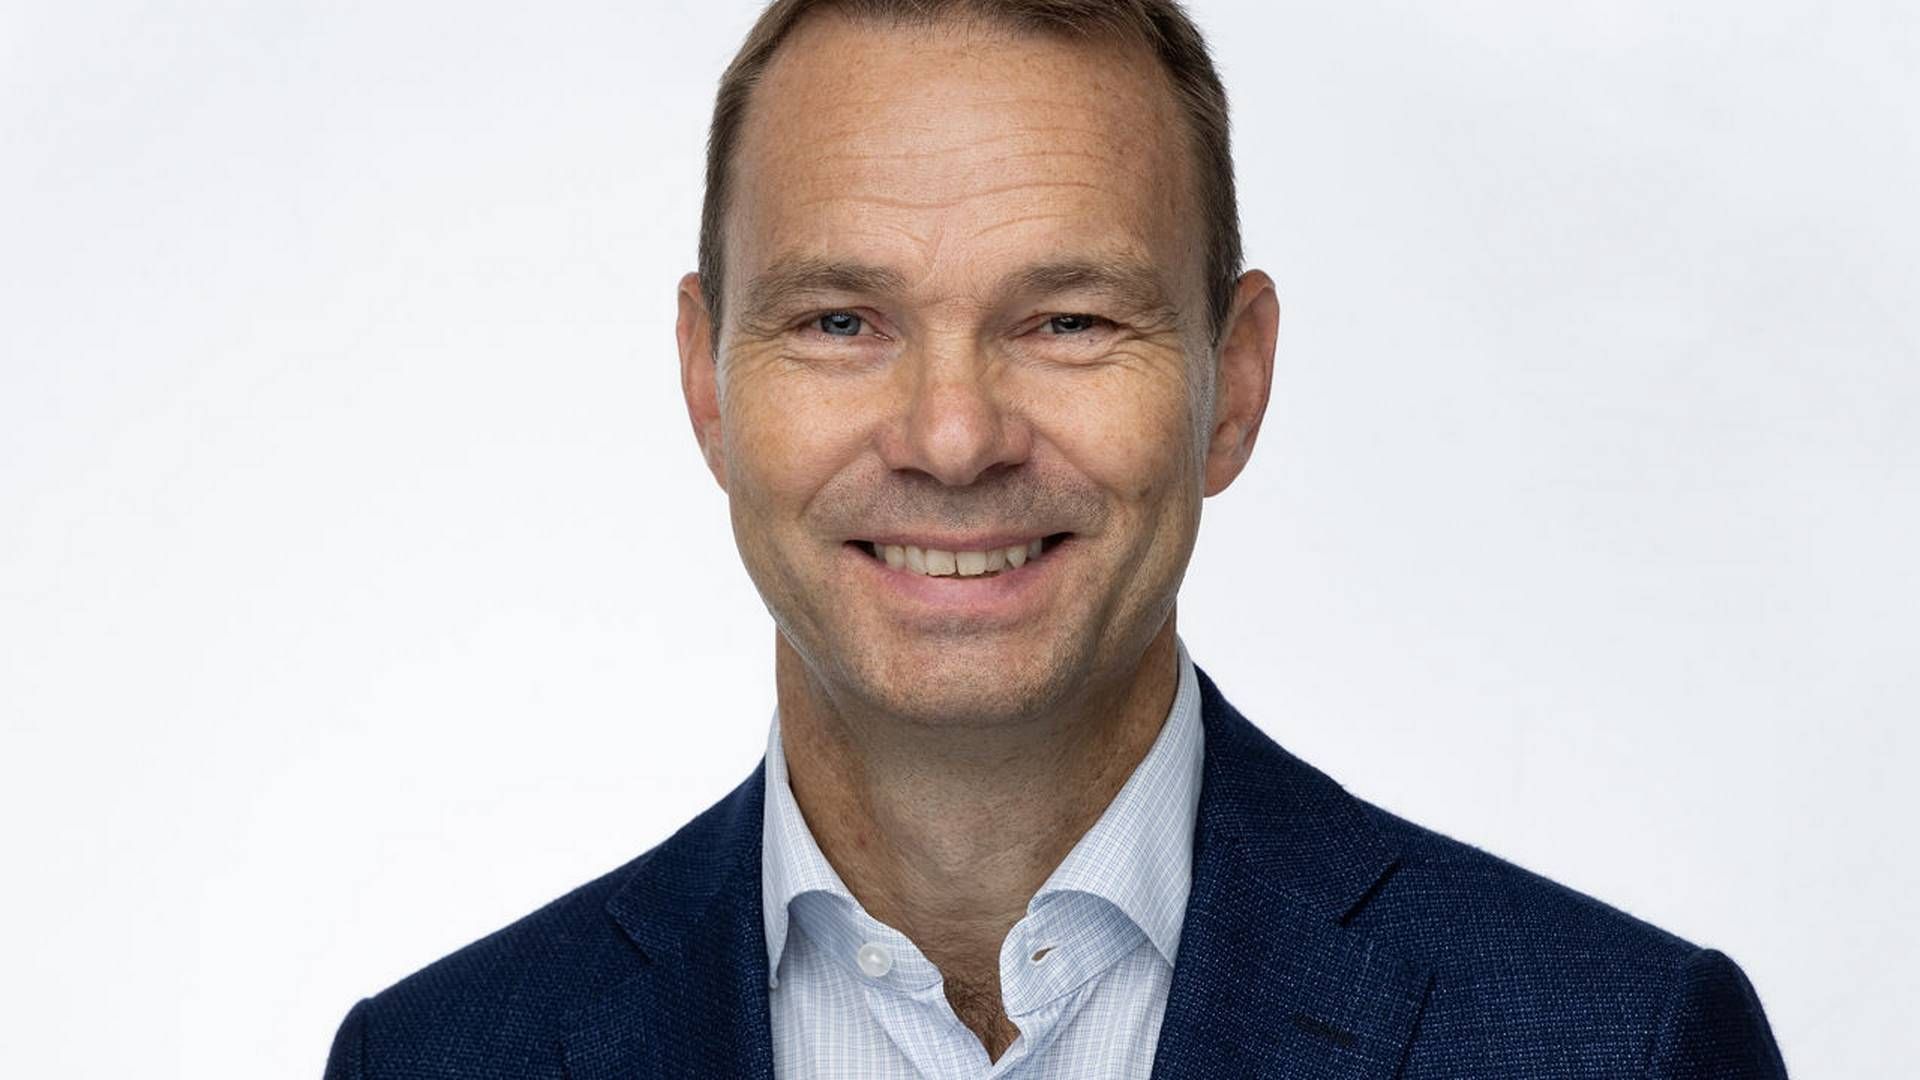 Rolf Thore Roppestad, CEO, Gard. | Photo: Gard